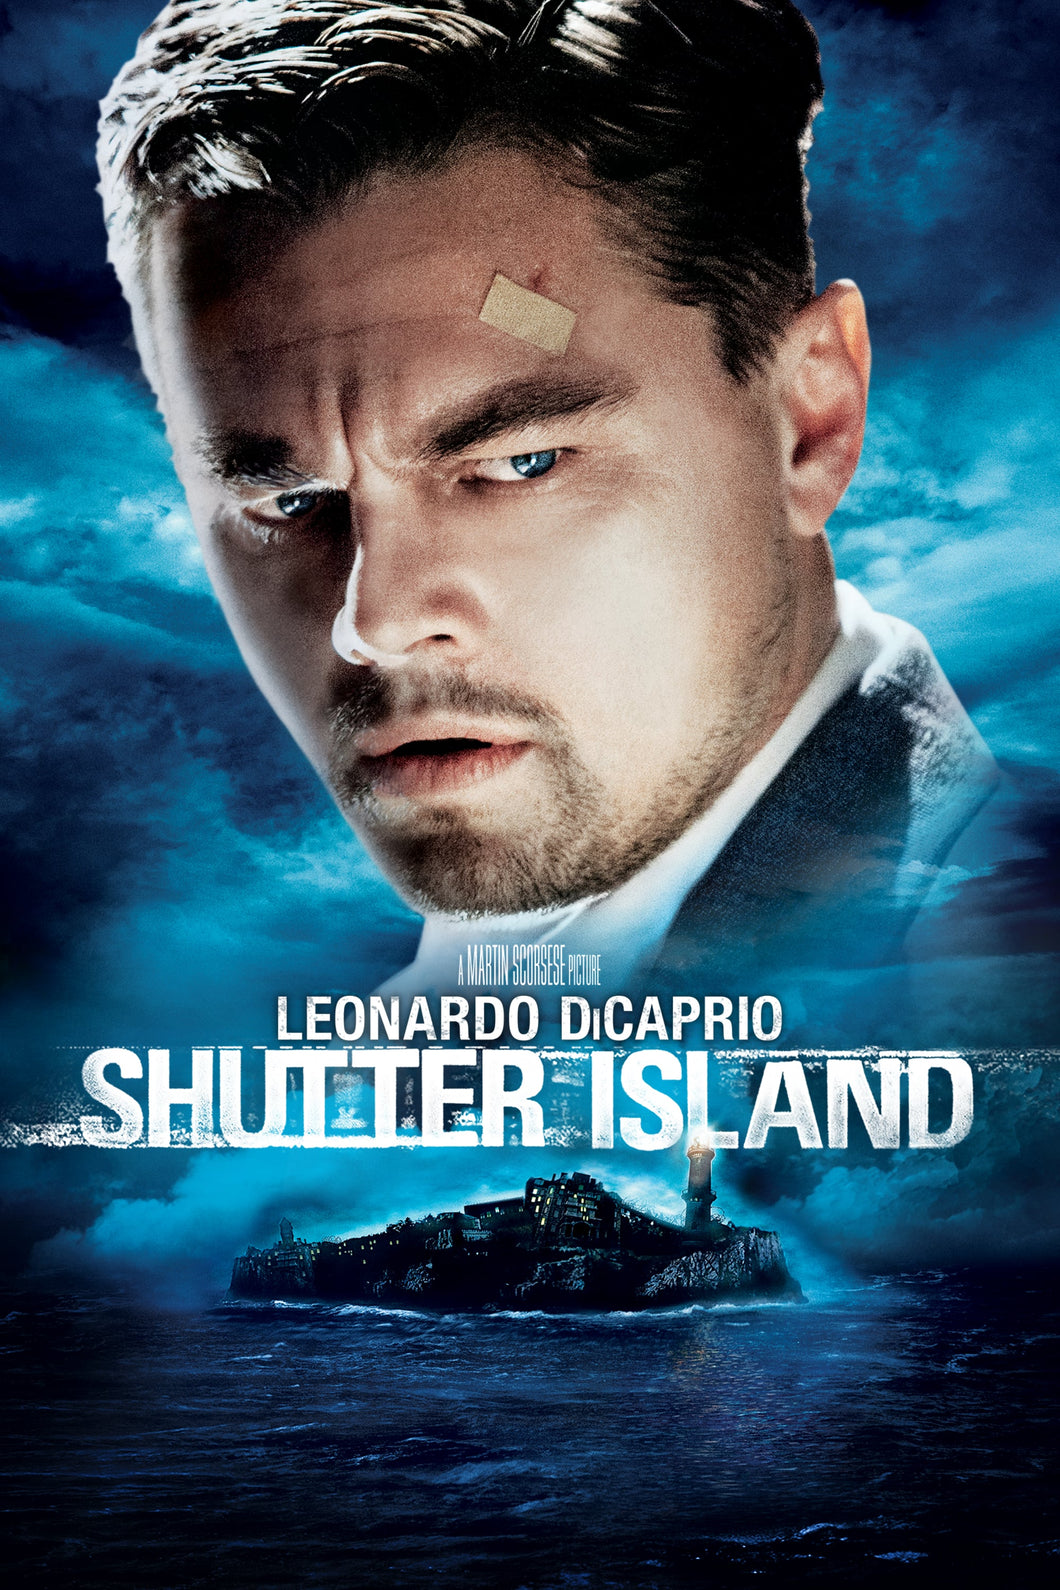 Shutter Island (2010) Movie Poster Framed or Unframed Glossy Poster Free UK Shipping!!!